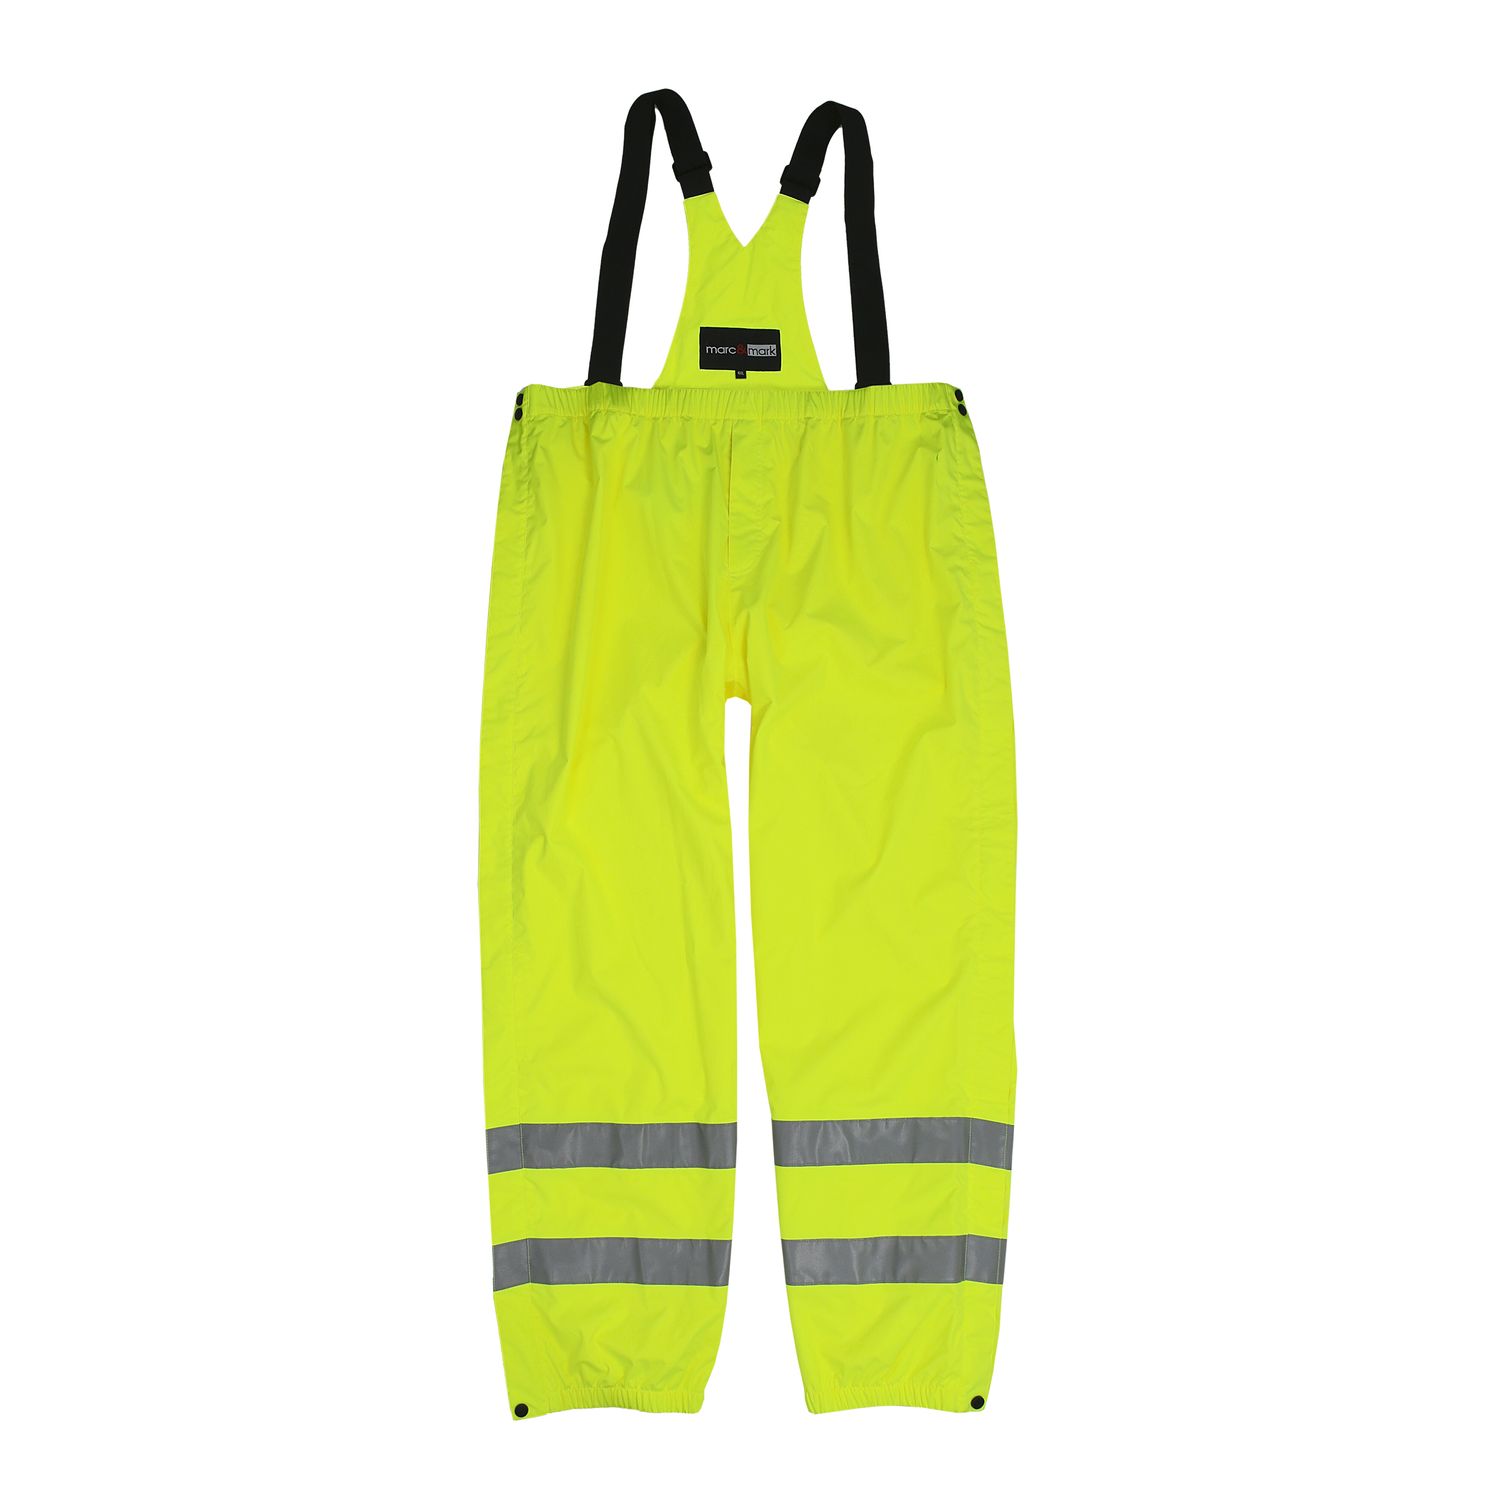 Pantalon fonctionnel pour le travail de Marc & Mark en grandes tailles 3XL-10XL / jaune fluo - bonne visibilité